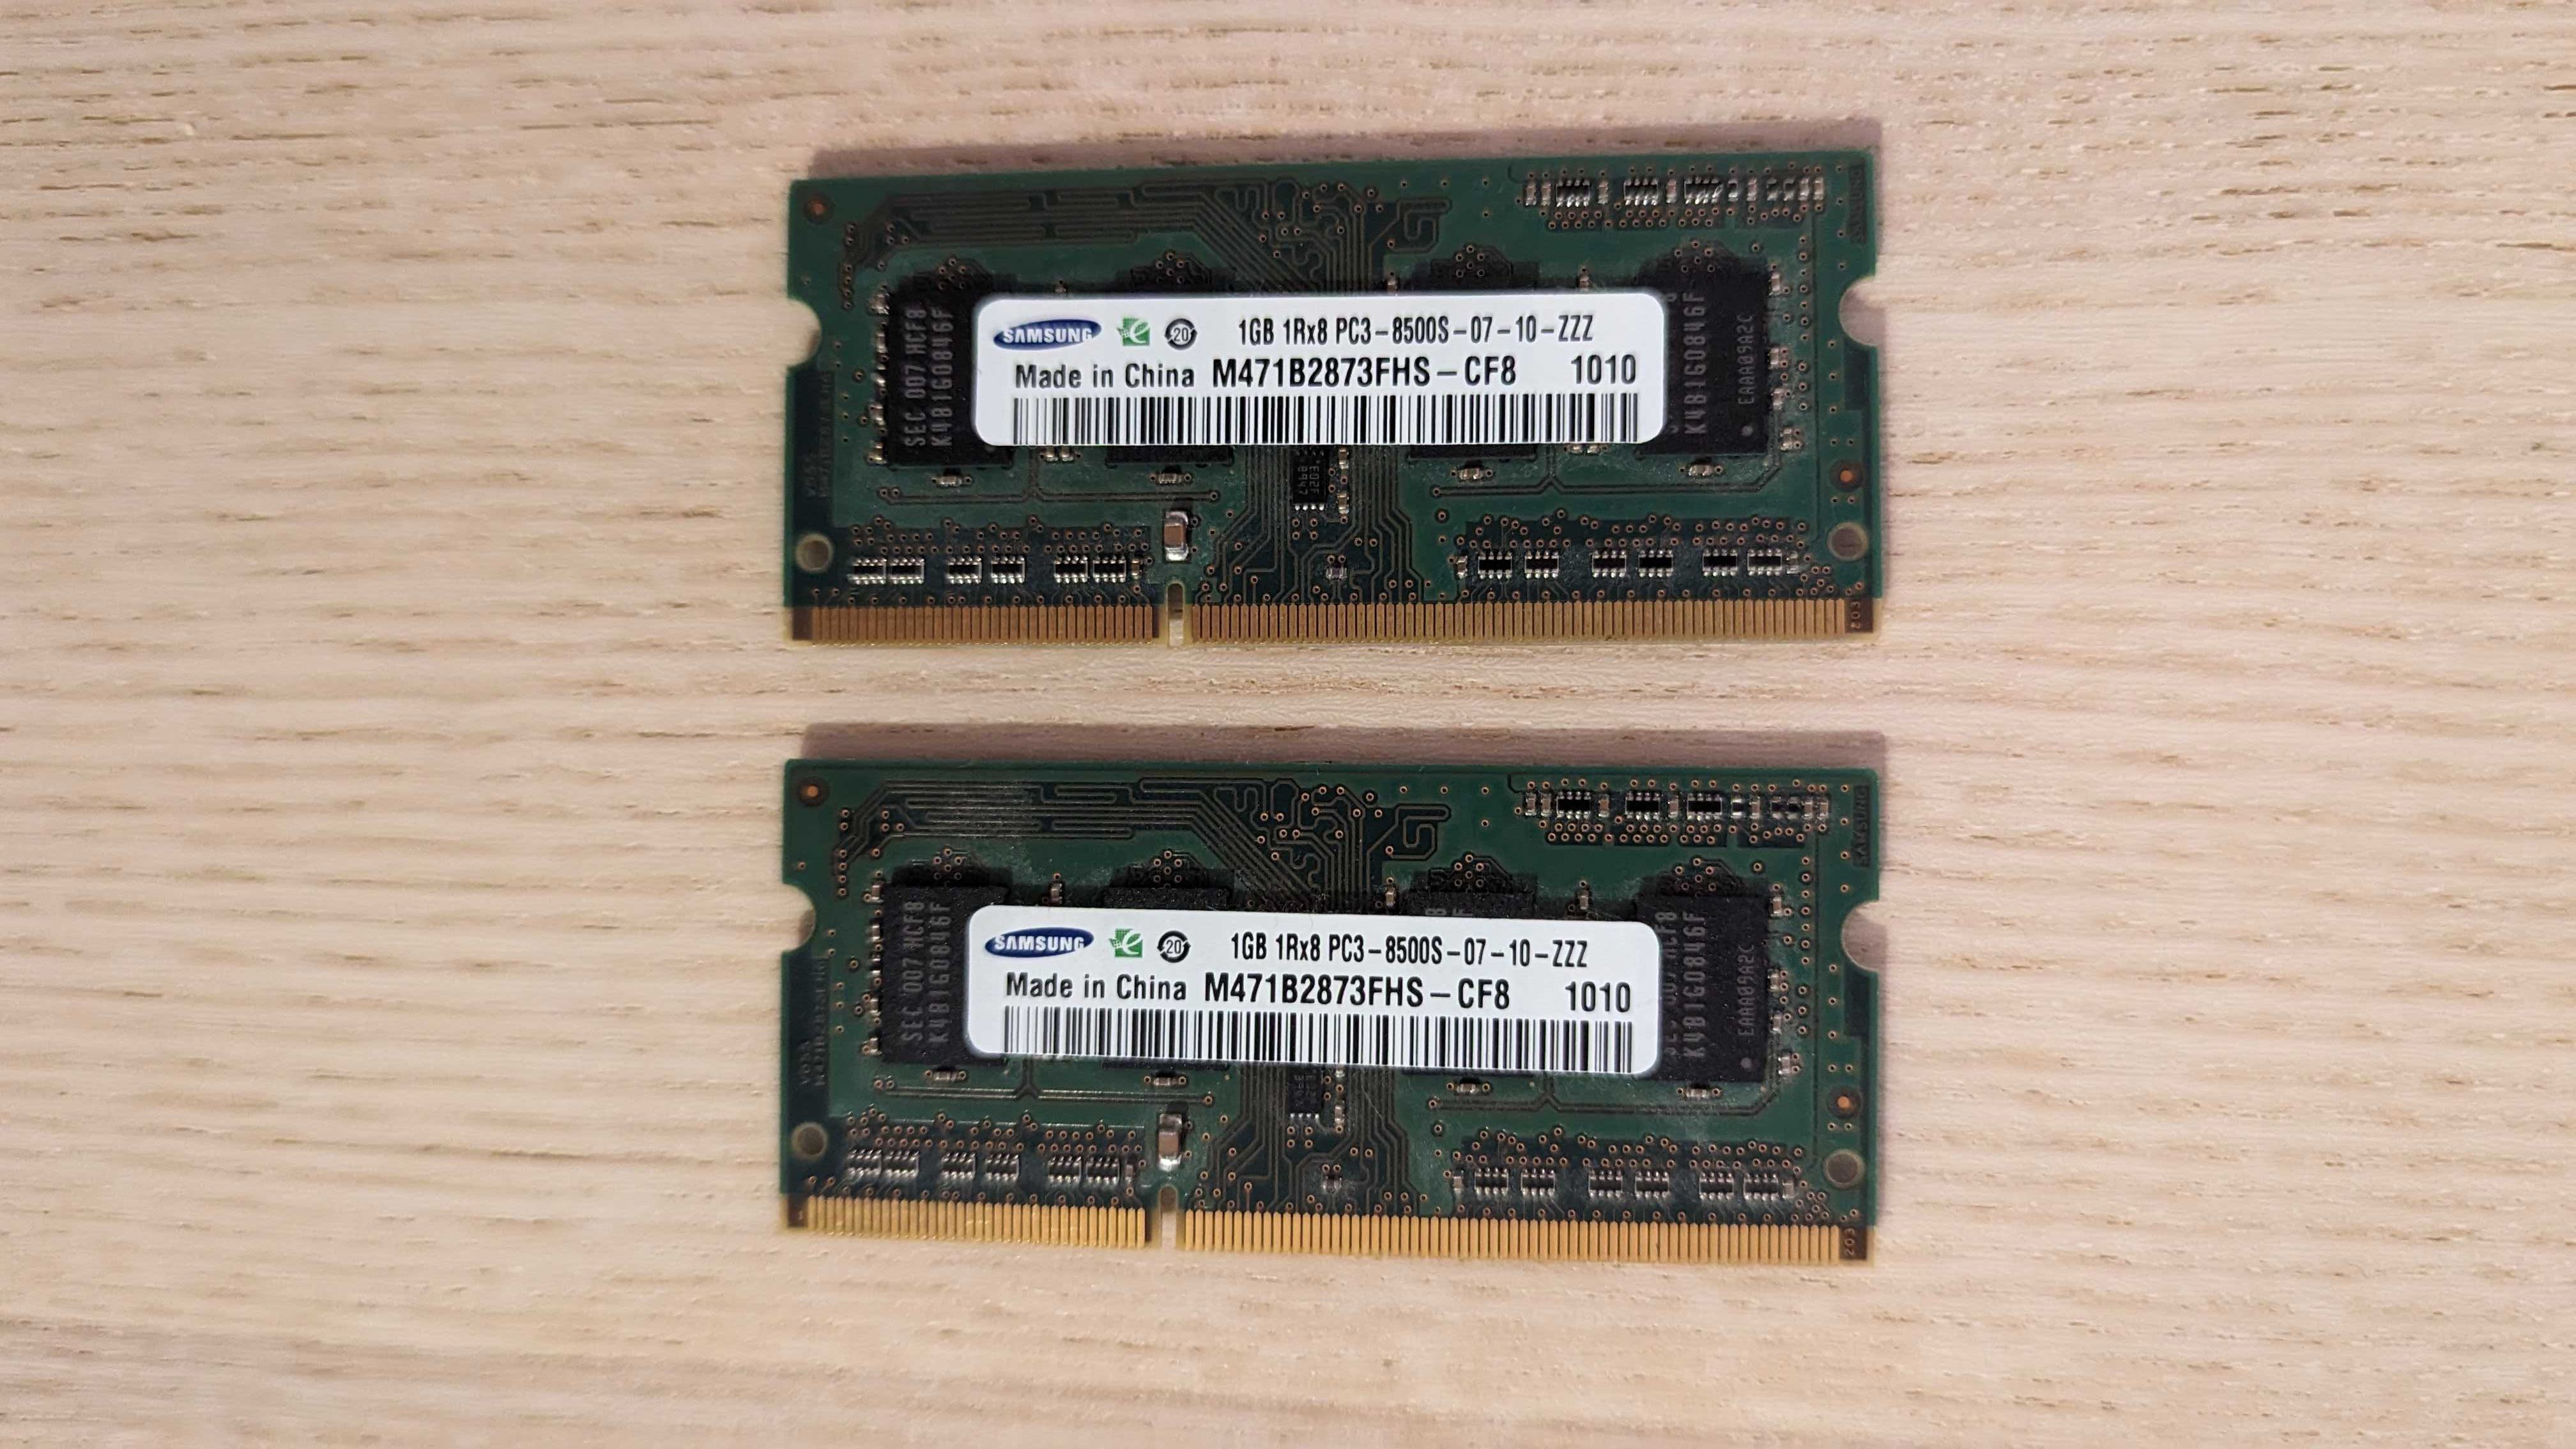 2 x SAMSUNG 1GB DDR 3 1066Mhz RAM